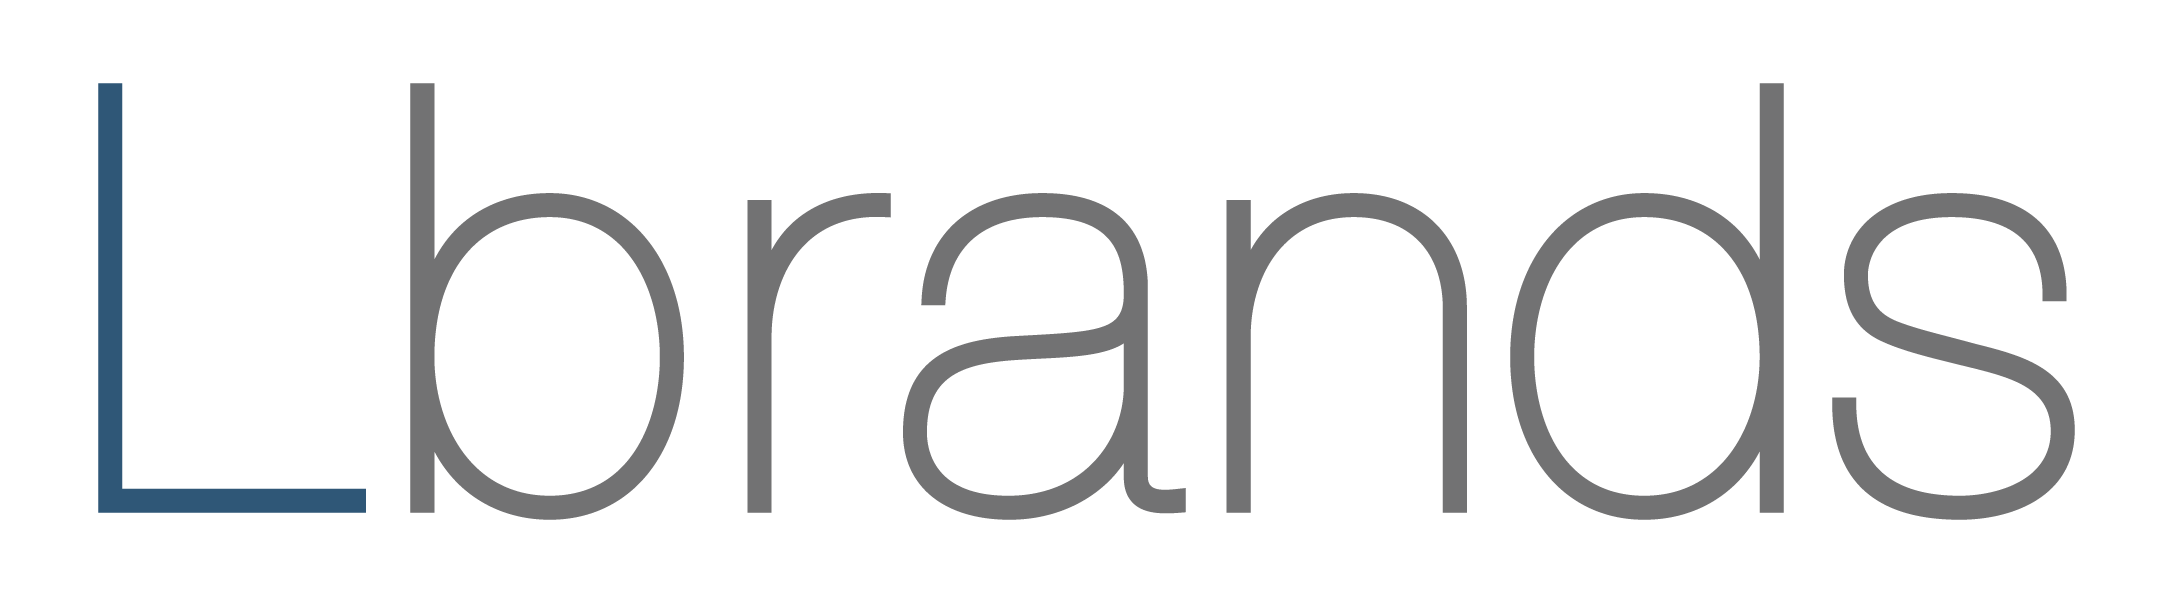 L Brands Logo PNG Image